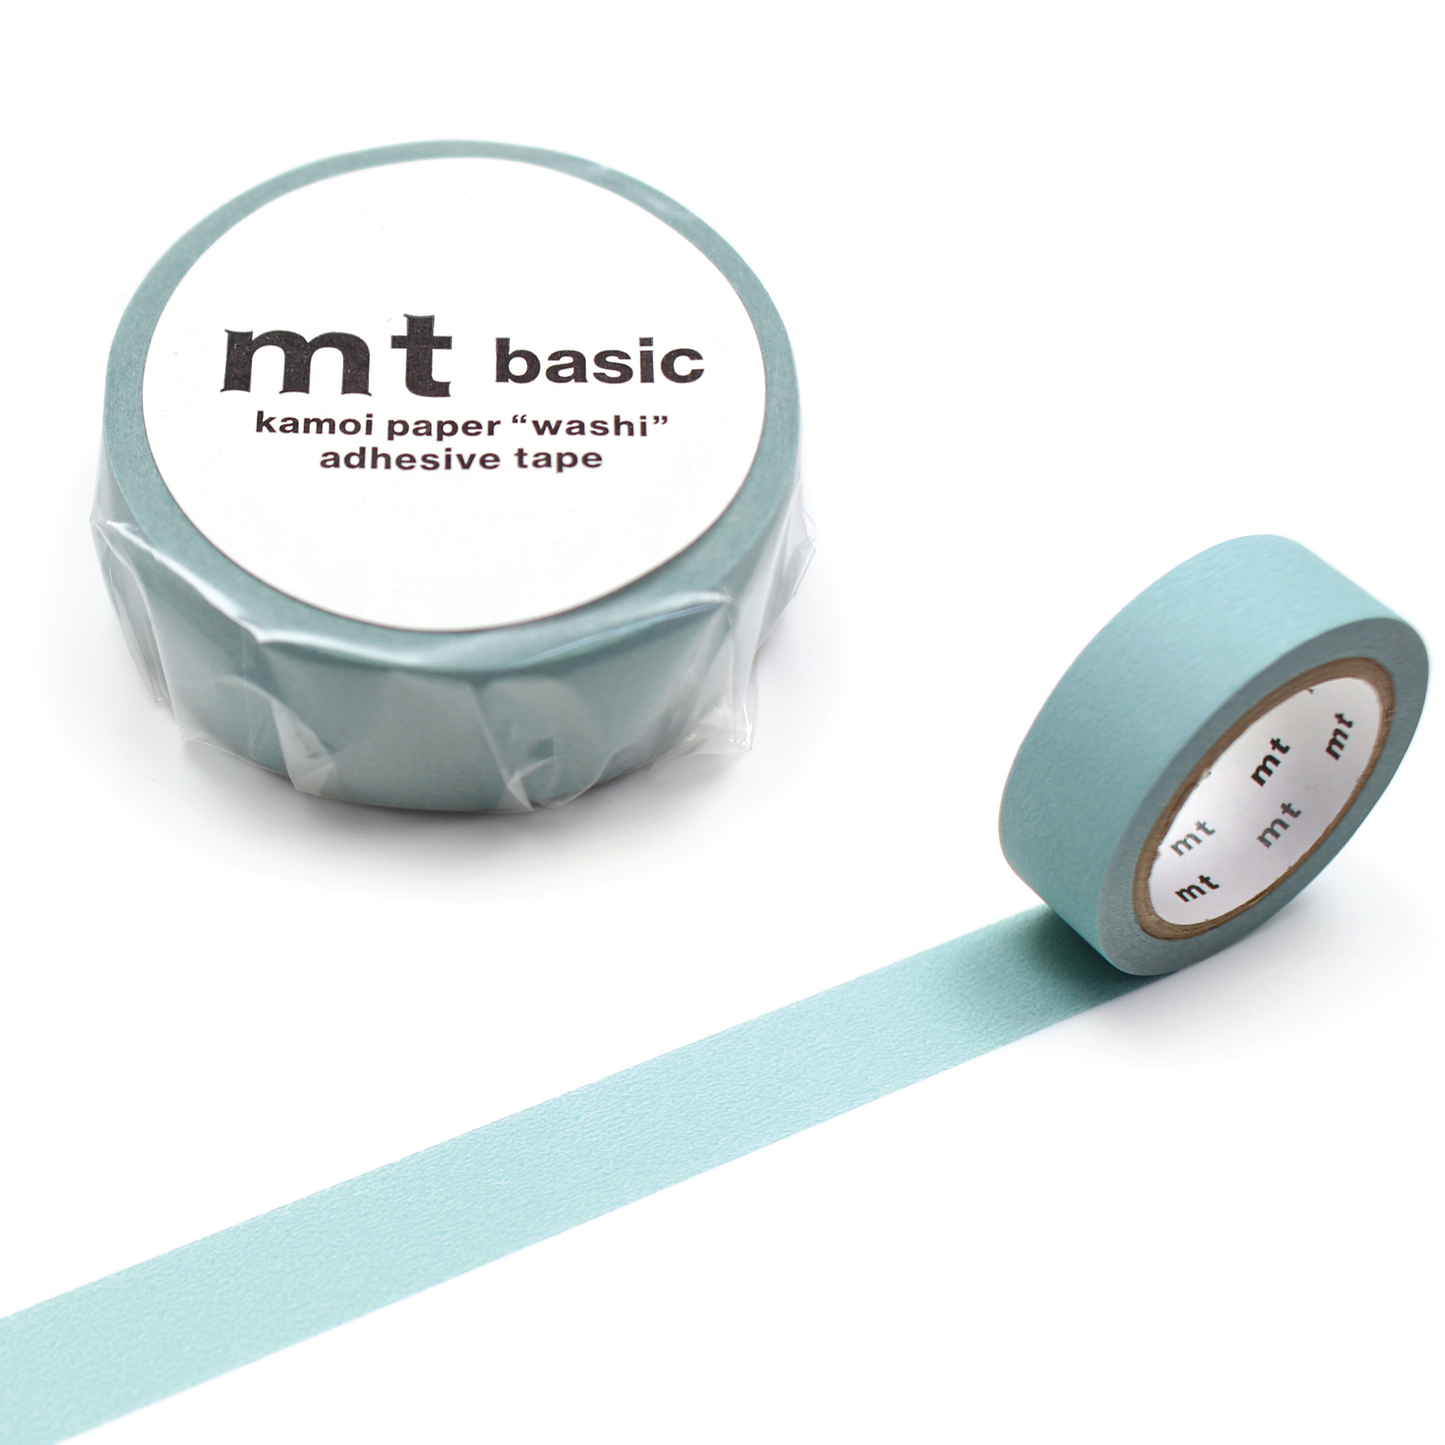 MT Basic Washi Tape - Matte Smoky Mint 7m